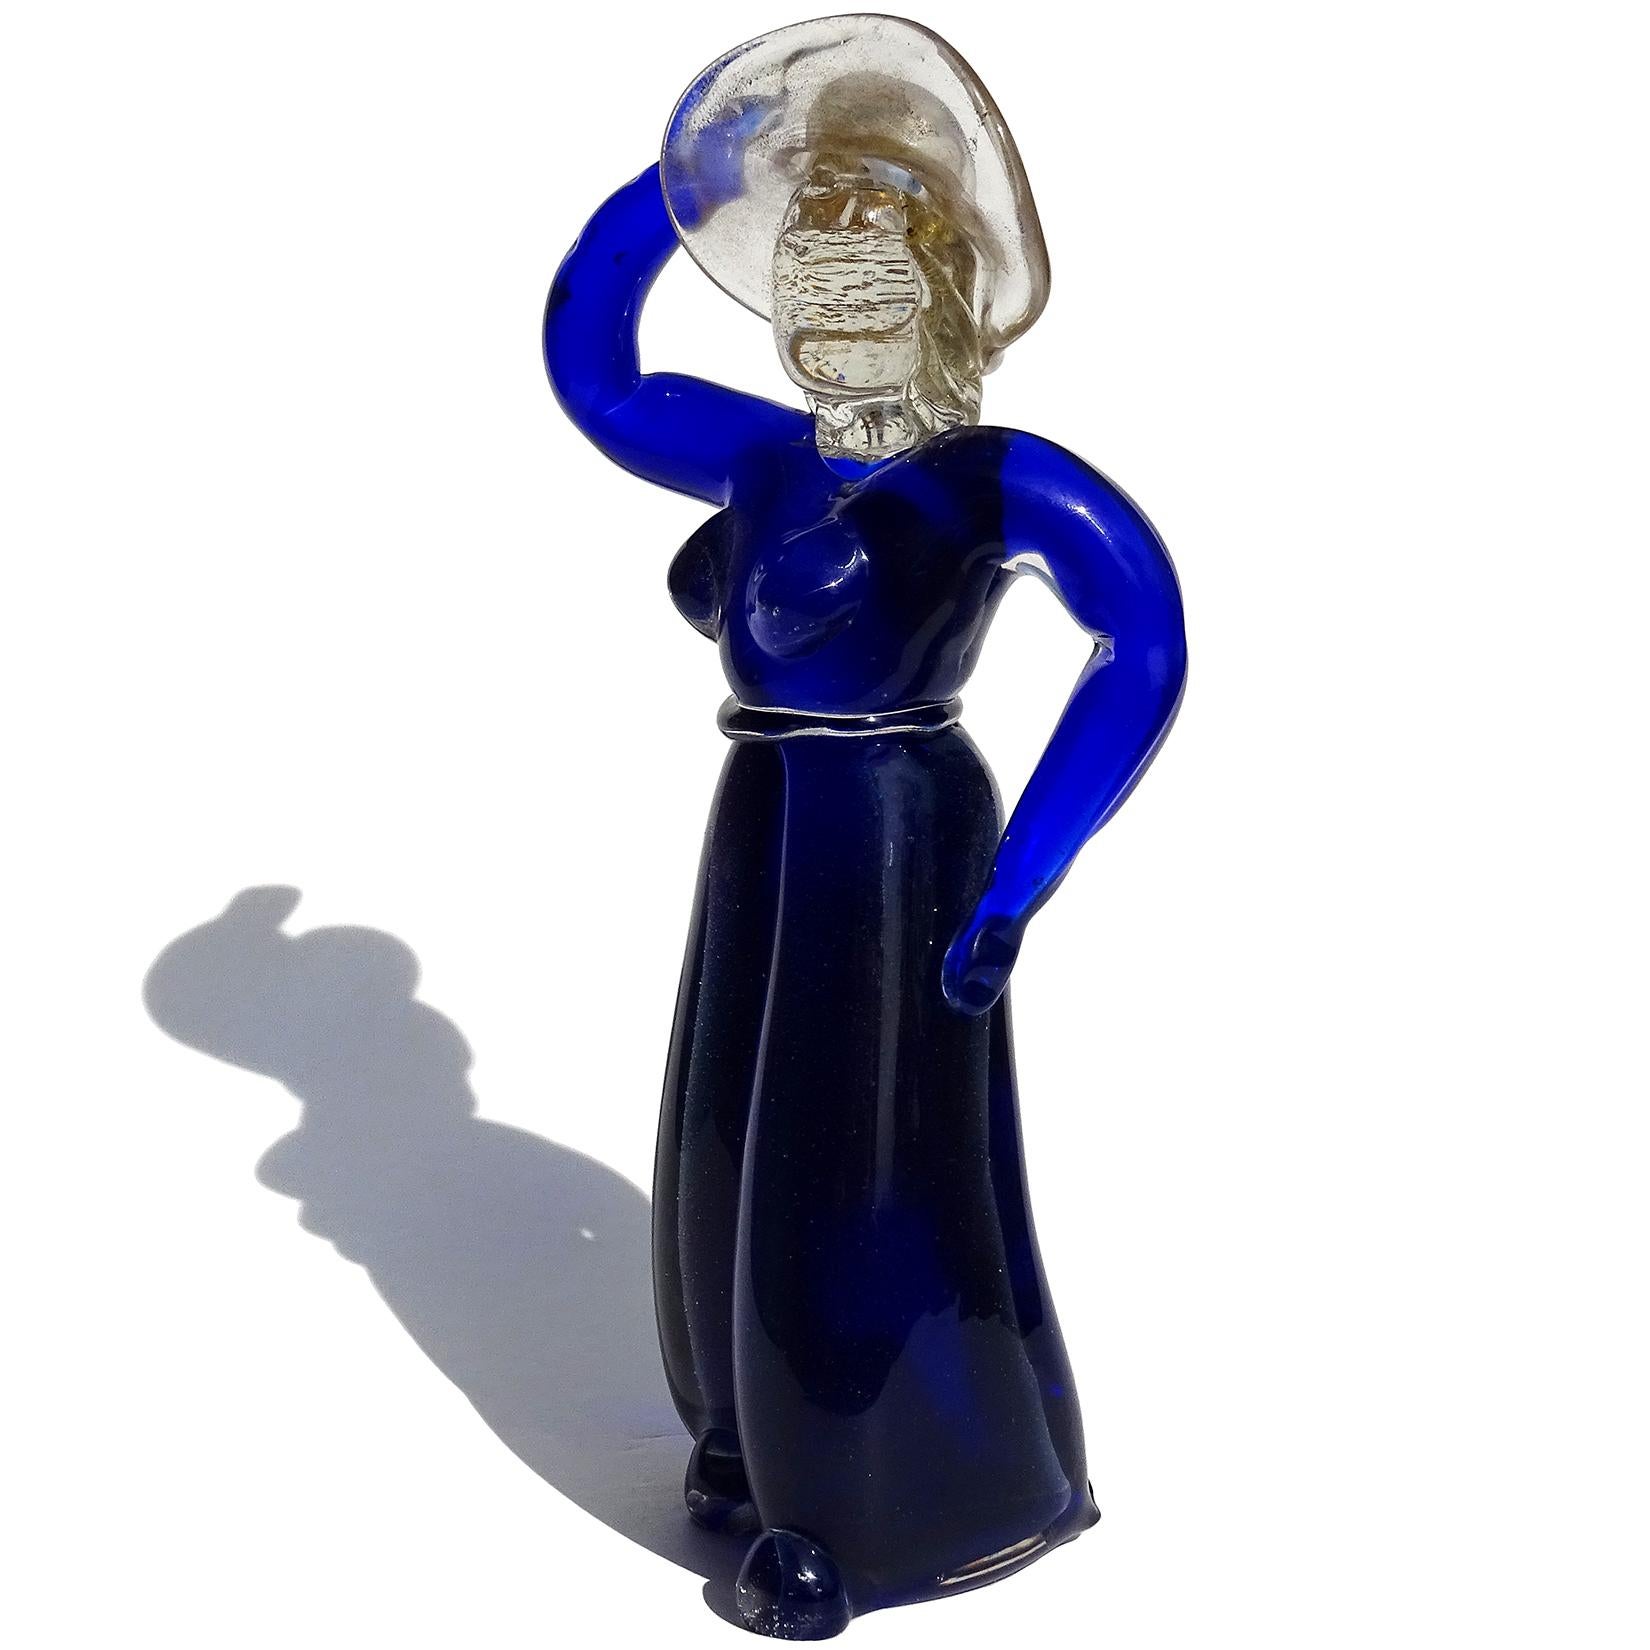 Magnifique sculpture italienne en verre soufflé à la bouche Sommerso bleu cobalt et mouchetures d'or, représentant une femme avec un chapeau de soleil. Attestation du designer Alfredo Barbini, pour V.A.M.S.A (Vetri Artistici Muranesi Societá